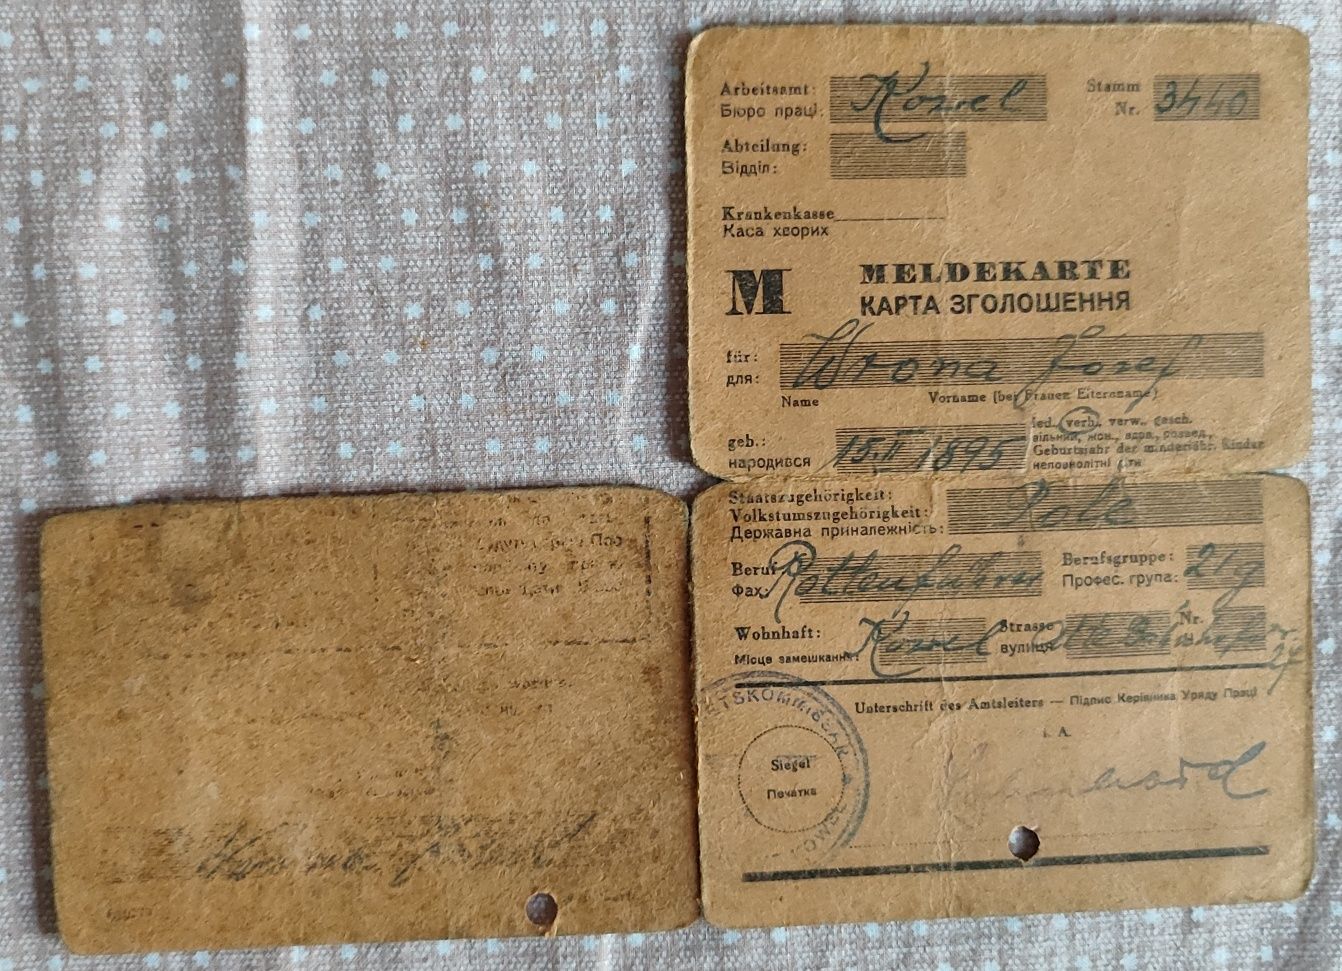 Stare karty meldunkowe Kowel Wołyń II wojna światowa meldekarte